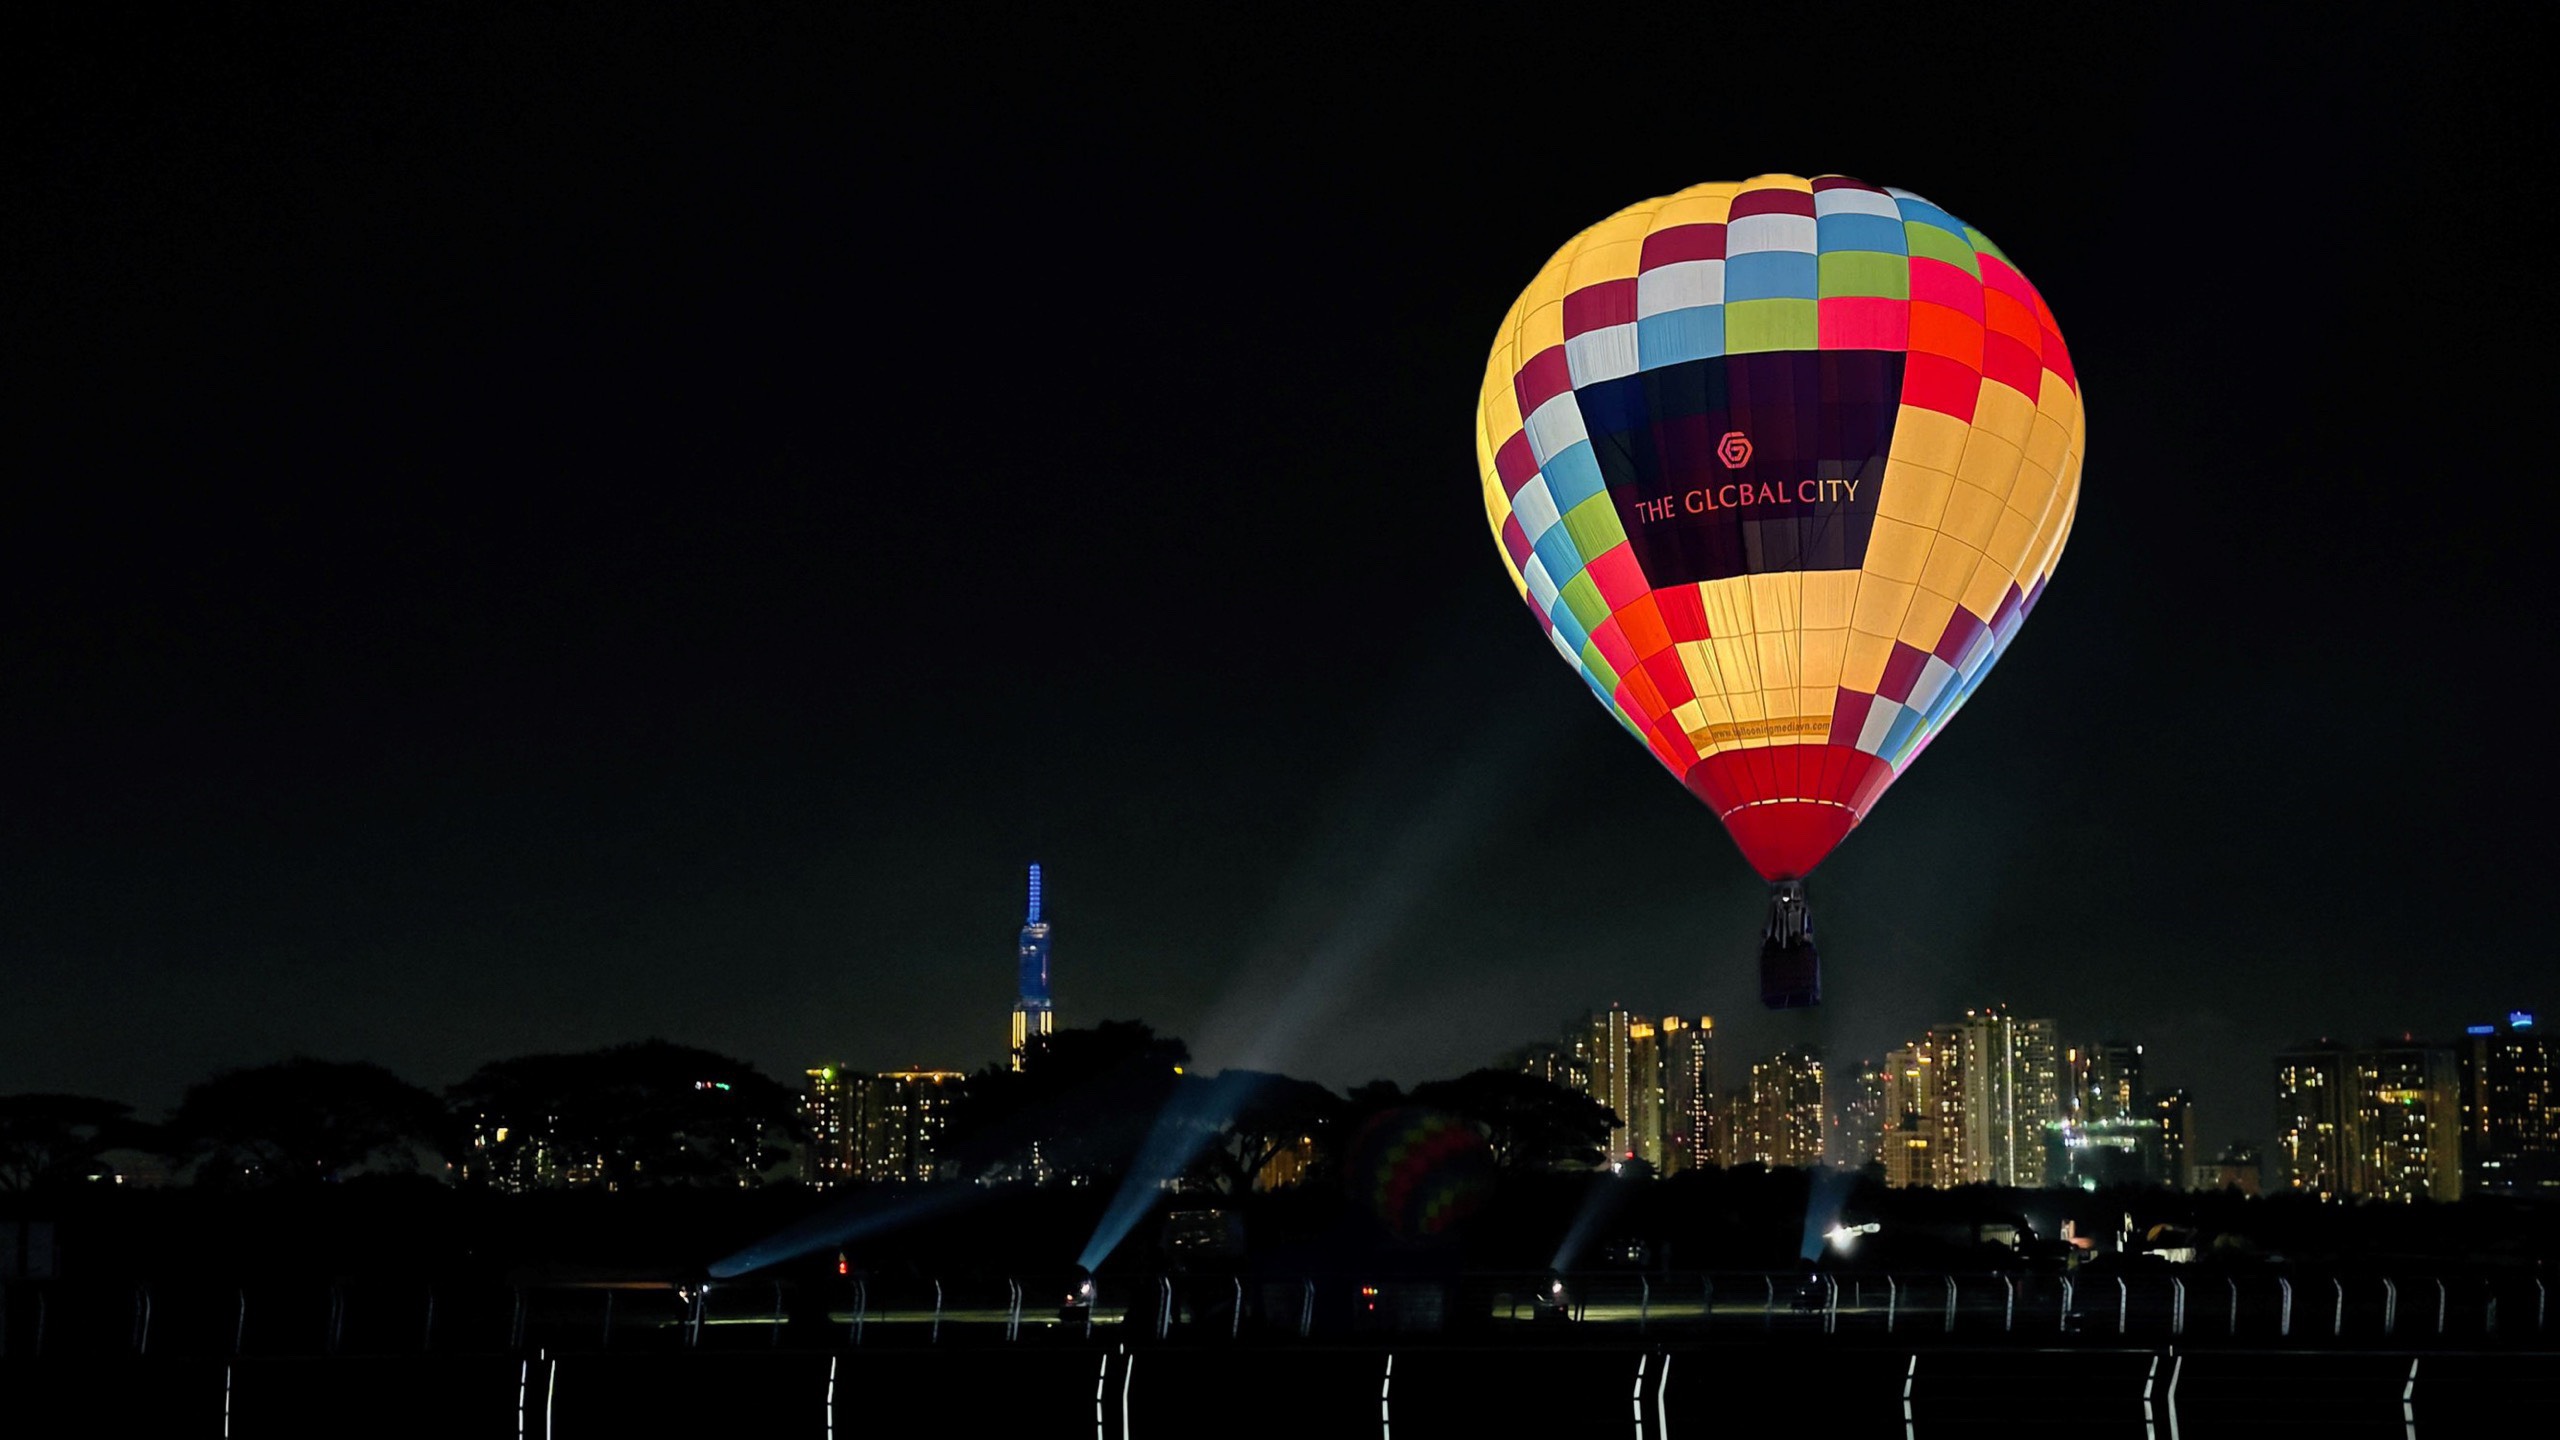 Kinh tế - Khinh khí cầu “trung tâm mới” rực rỡ sắc màu, chào đón “Lễ hội Nhạc nước lớn nhất Đông Nam Á” tại TPHCM (Hình 2).